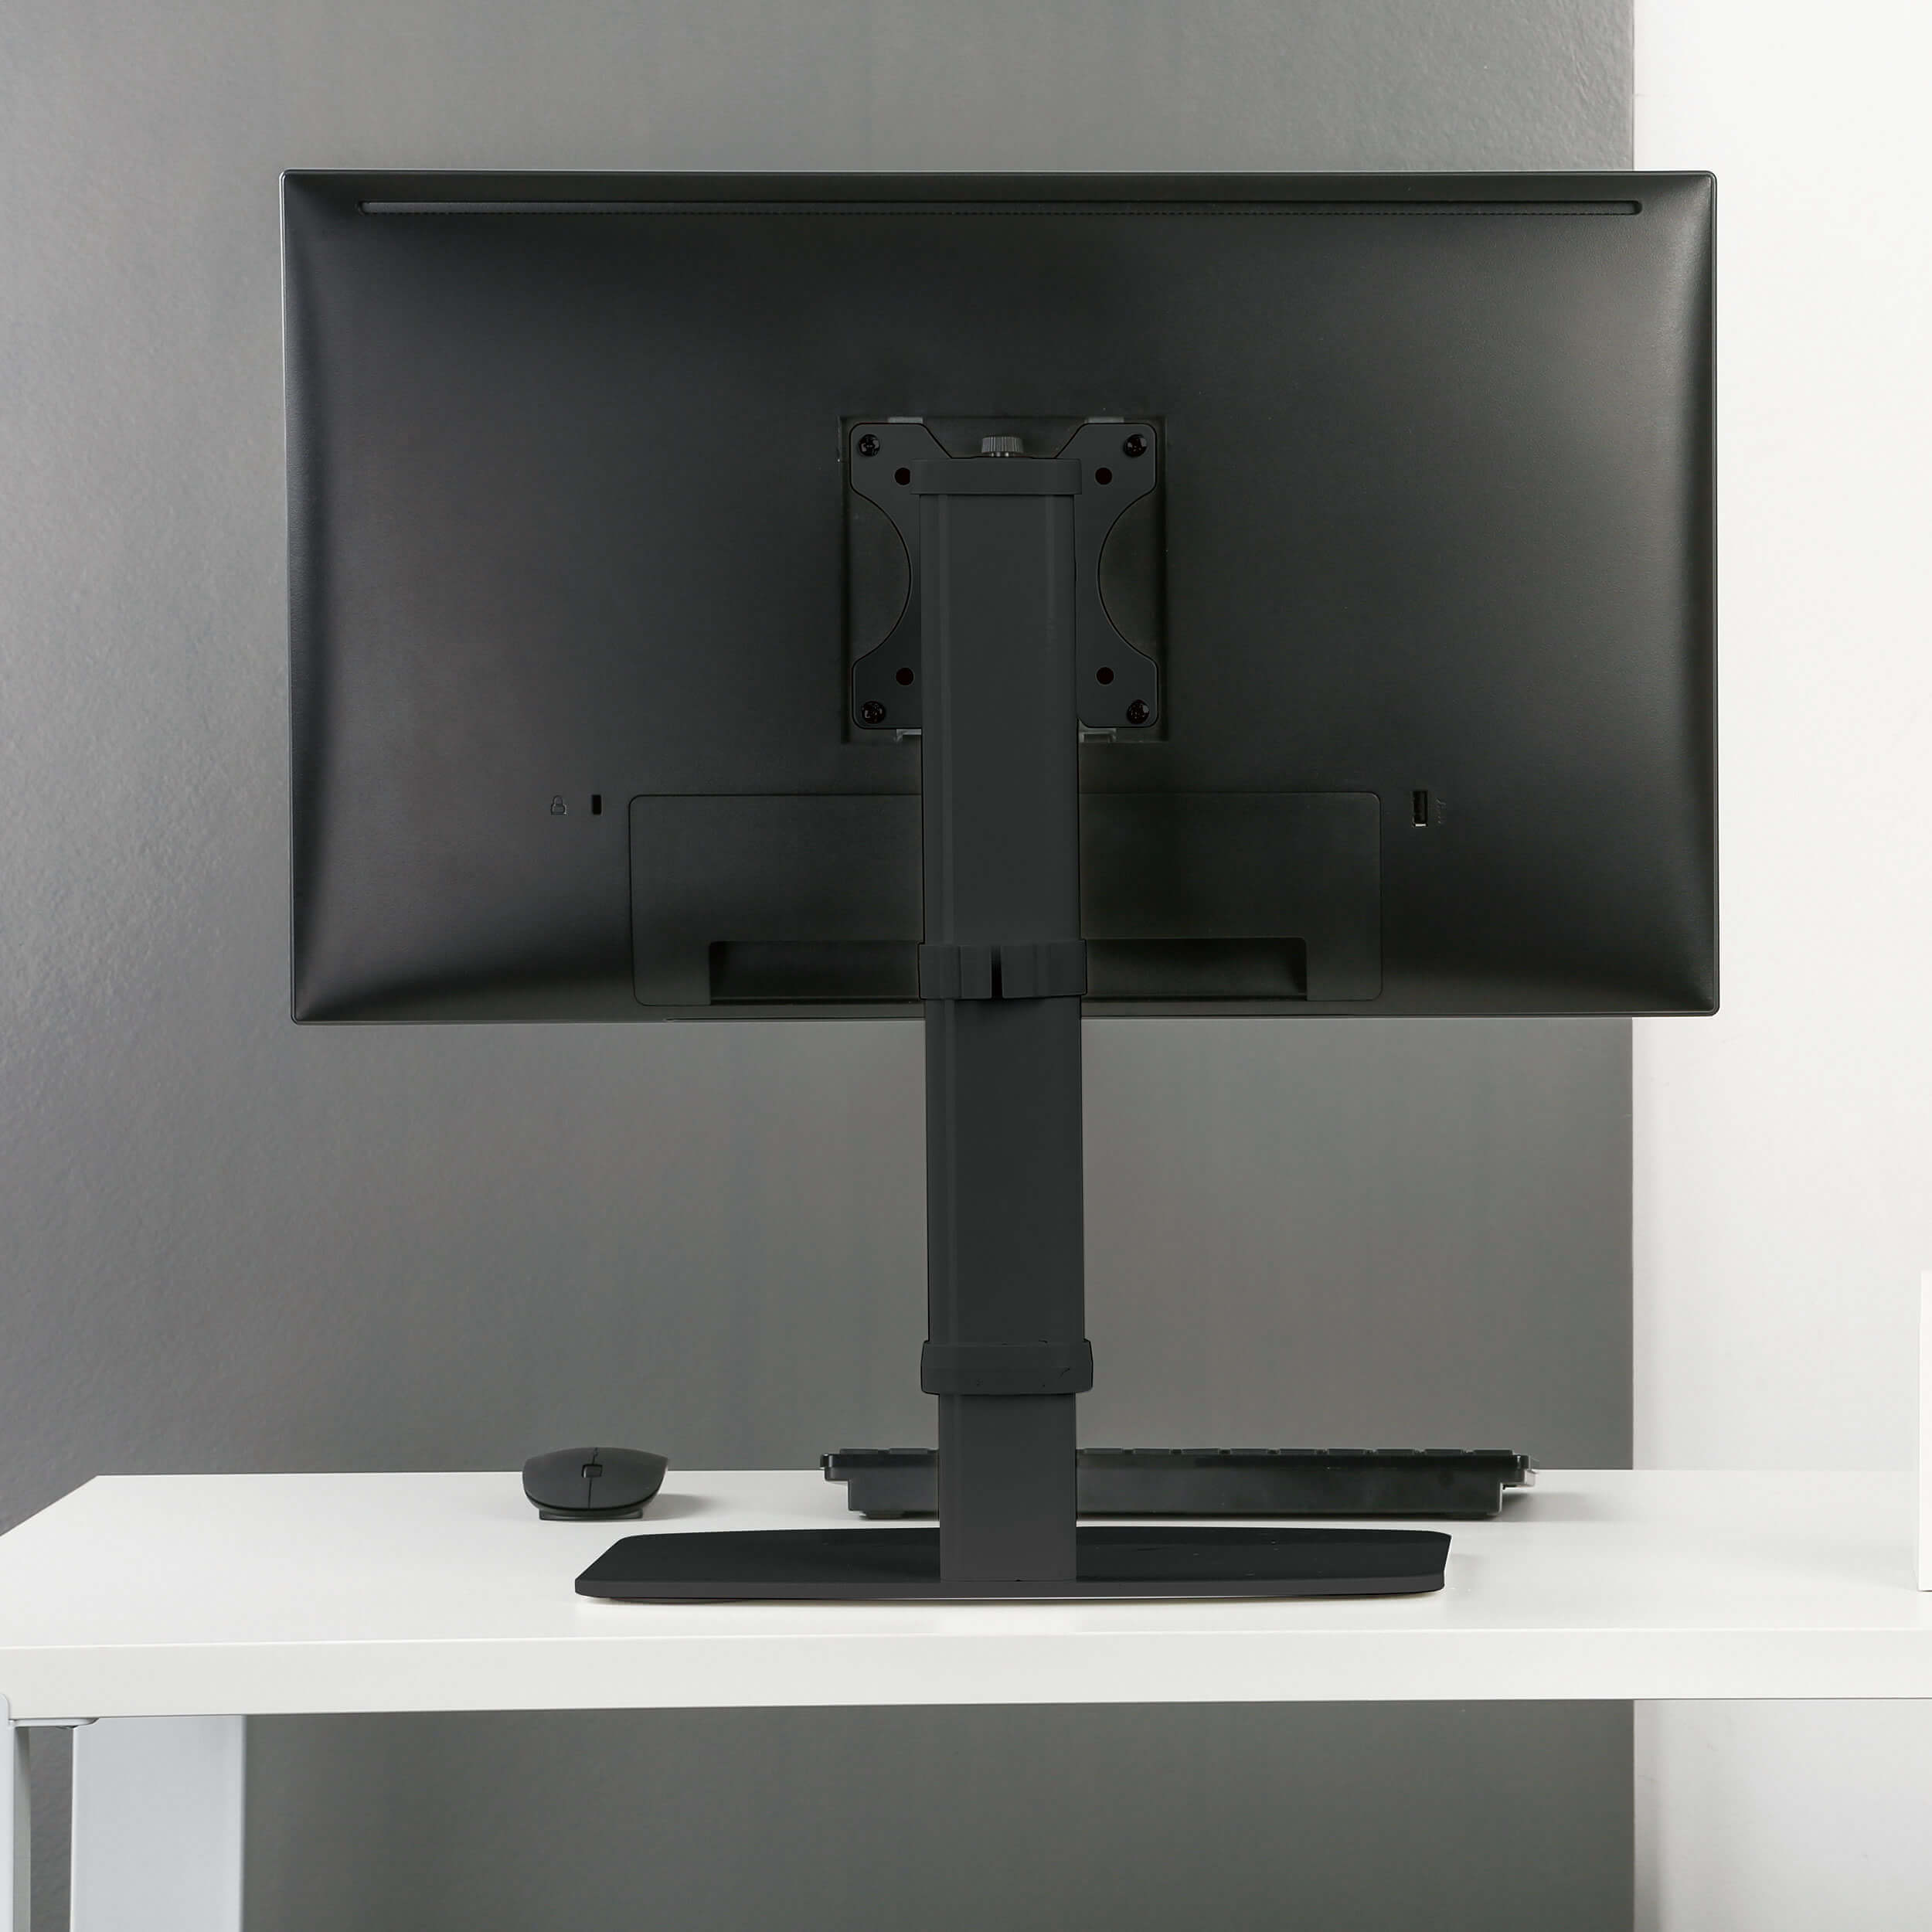 Tripplite Stojan pro montáž monitoru na stůl, nastavitelná výška, pro 1x 17"…27" monitory 